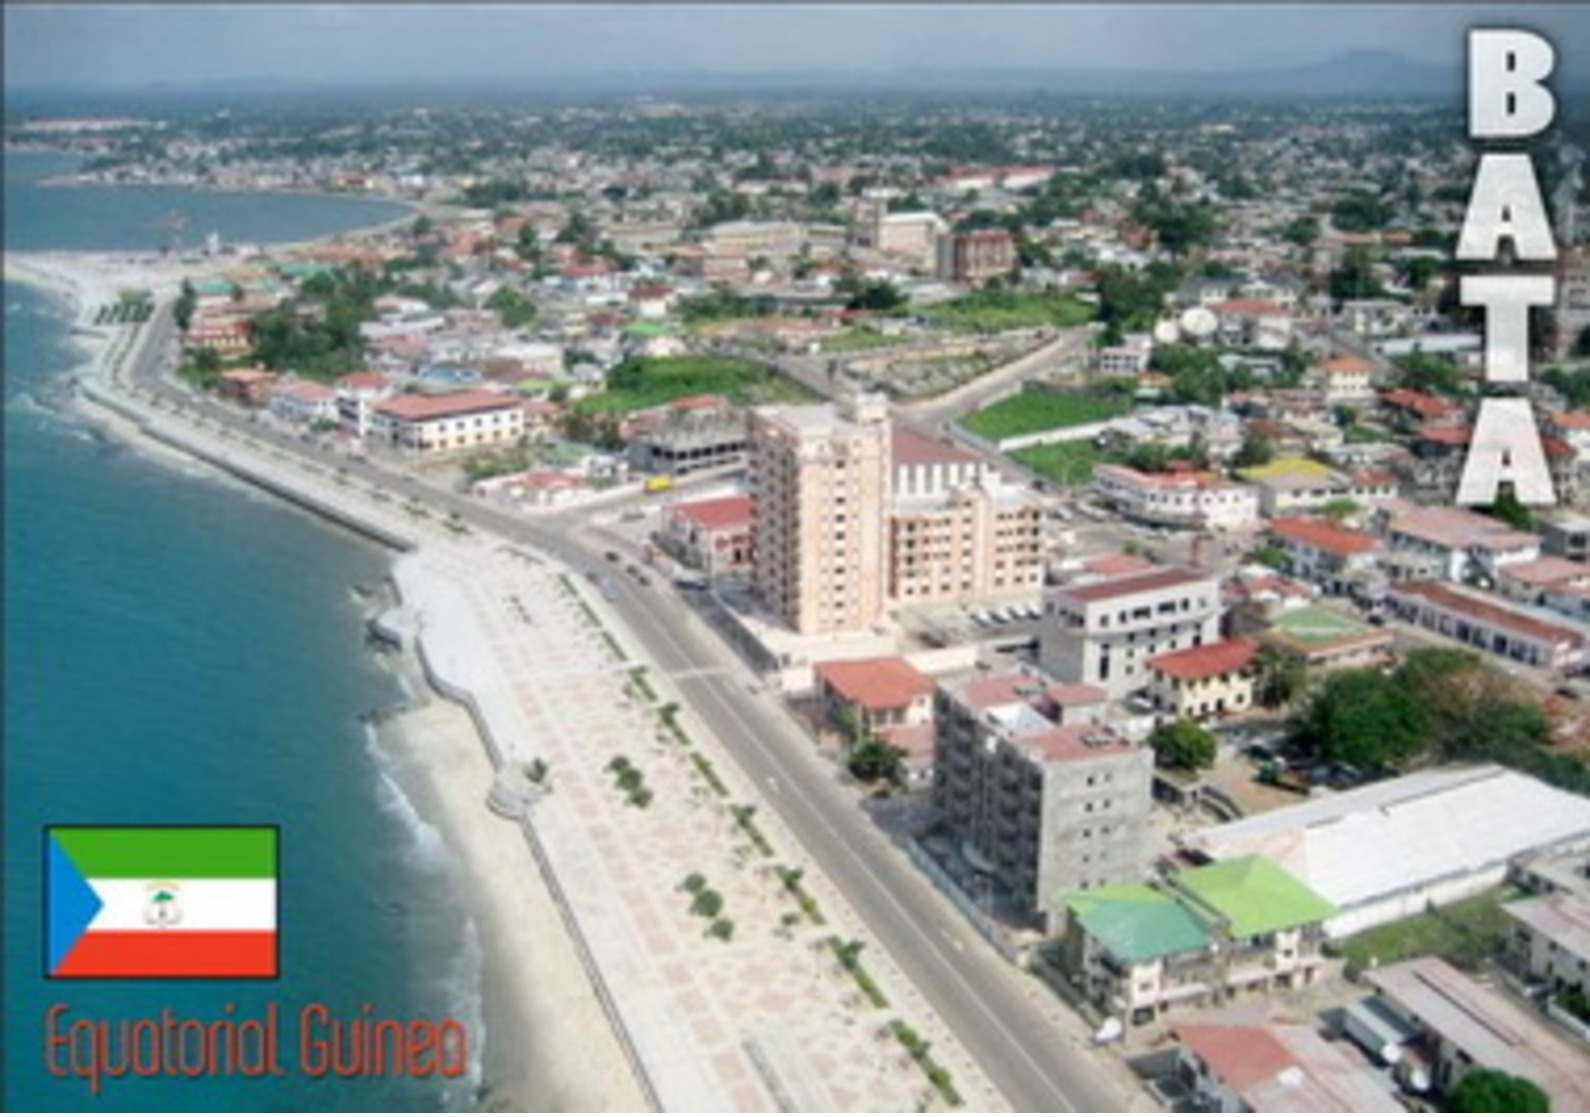 Bata Ecuatorial Equatorial Guinea Guinee - Afrique, Africa - Guinea Ecuatorial